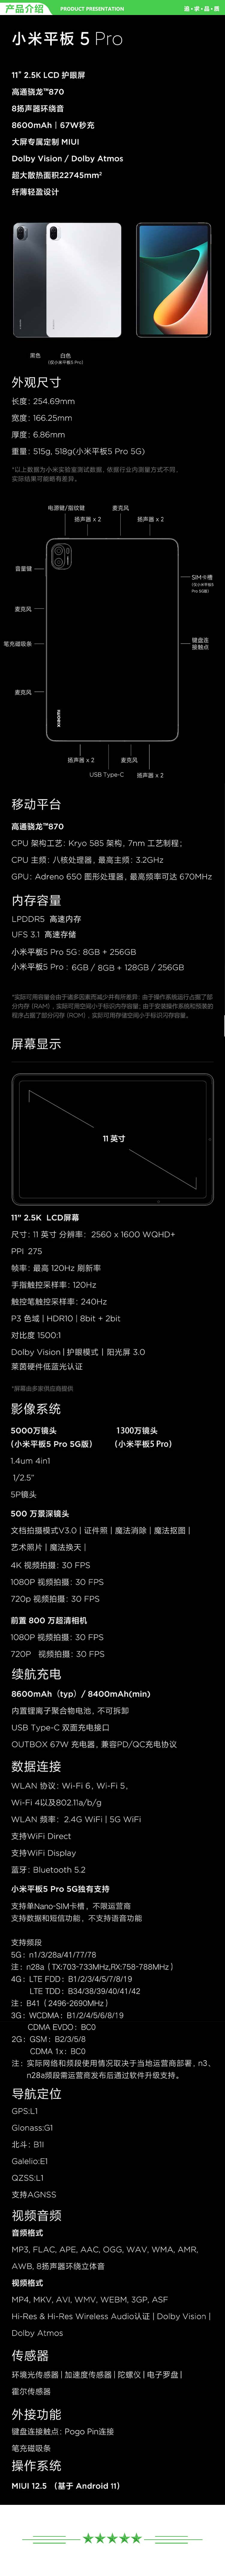 小米 xiaomi 平板5 Pro 平板电脑（11英寸2.5K高清 120Hz 骁龙860 6G+128GB 67W快充 杜比影音娱乐办公 黑色）+ 键盘套装.jpg